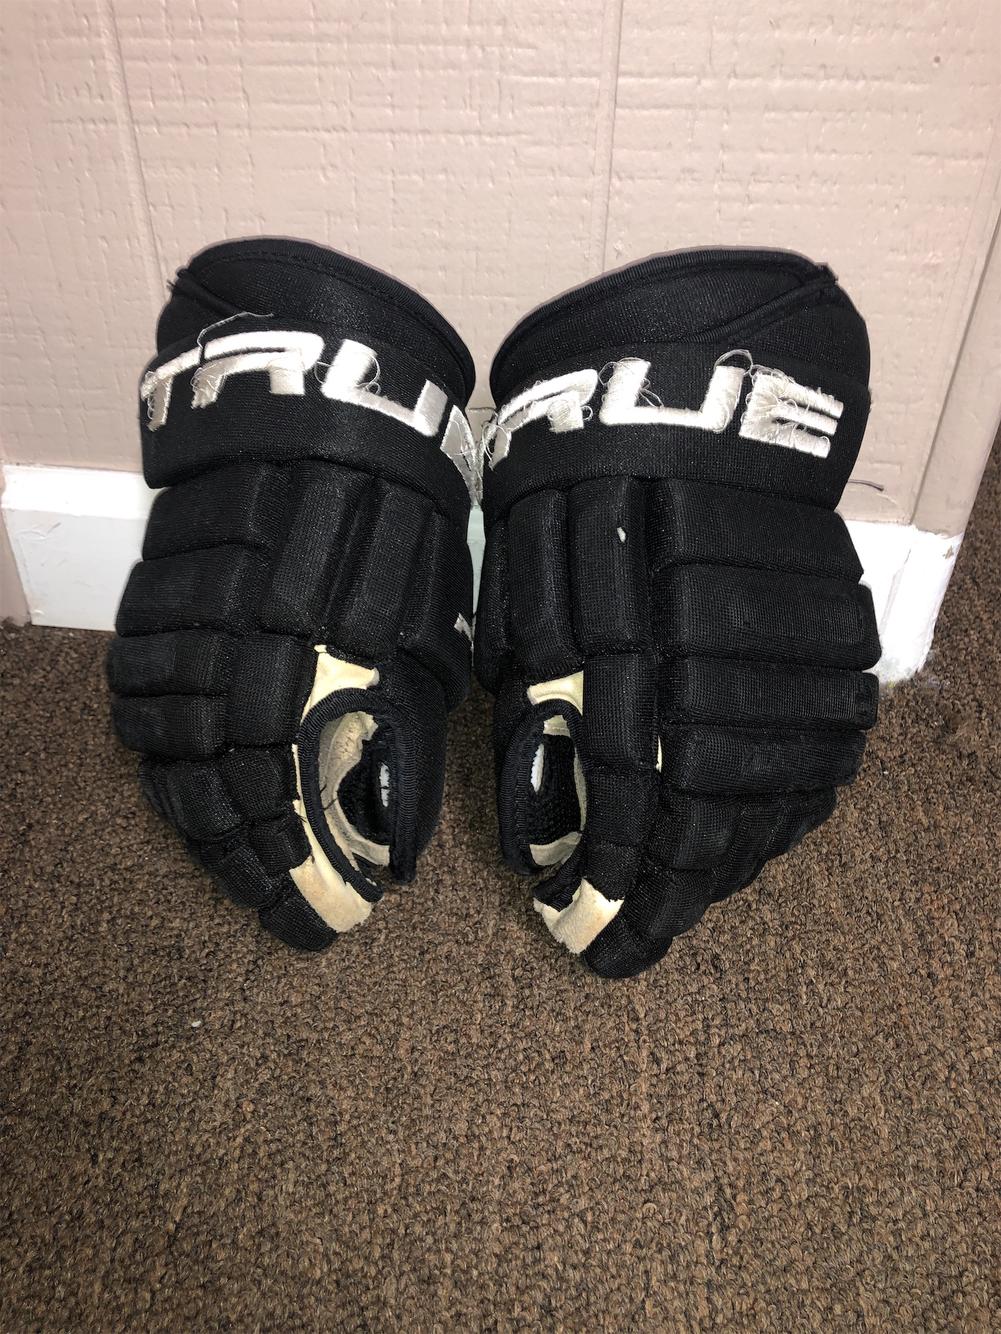 New RYR Ice Hockey Player Gloves "Winterhawks" Navy White senior 14" sr size 